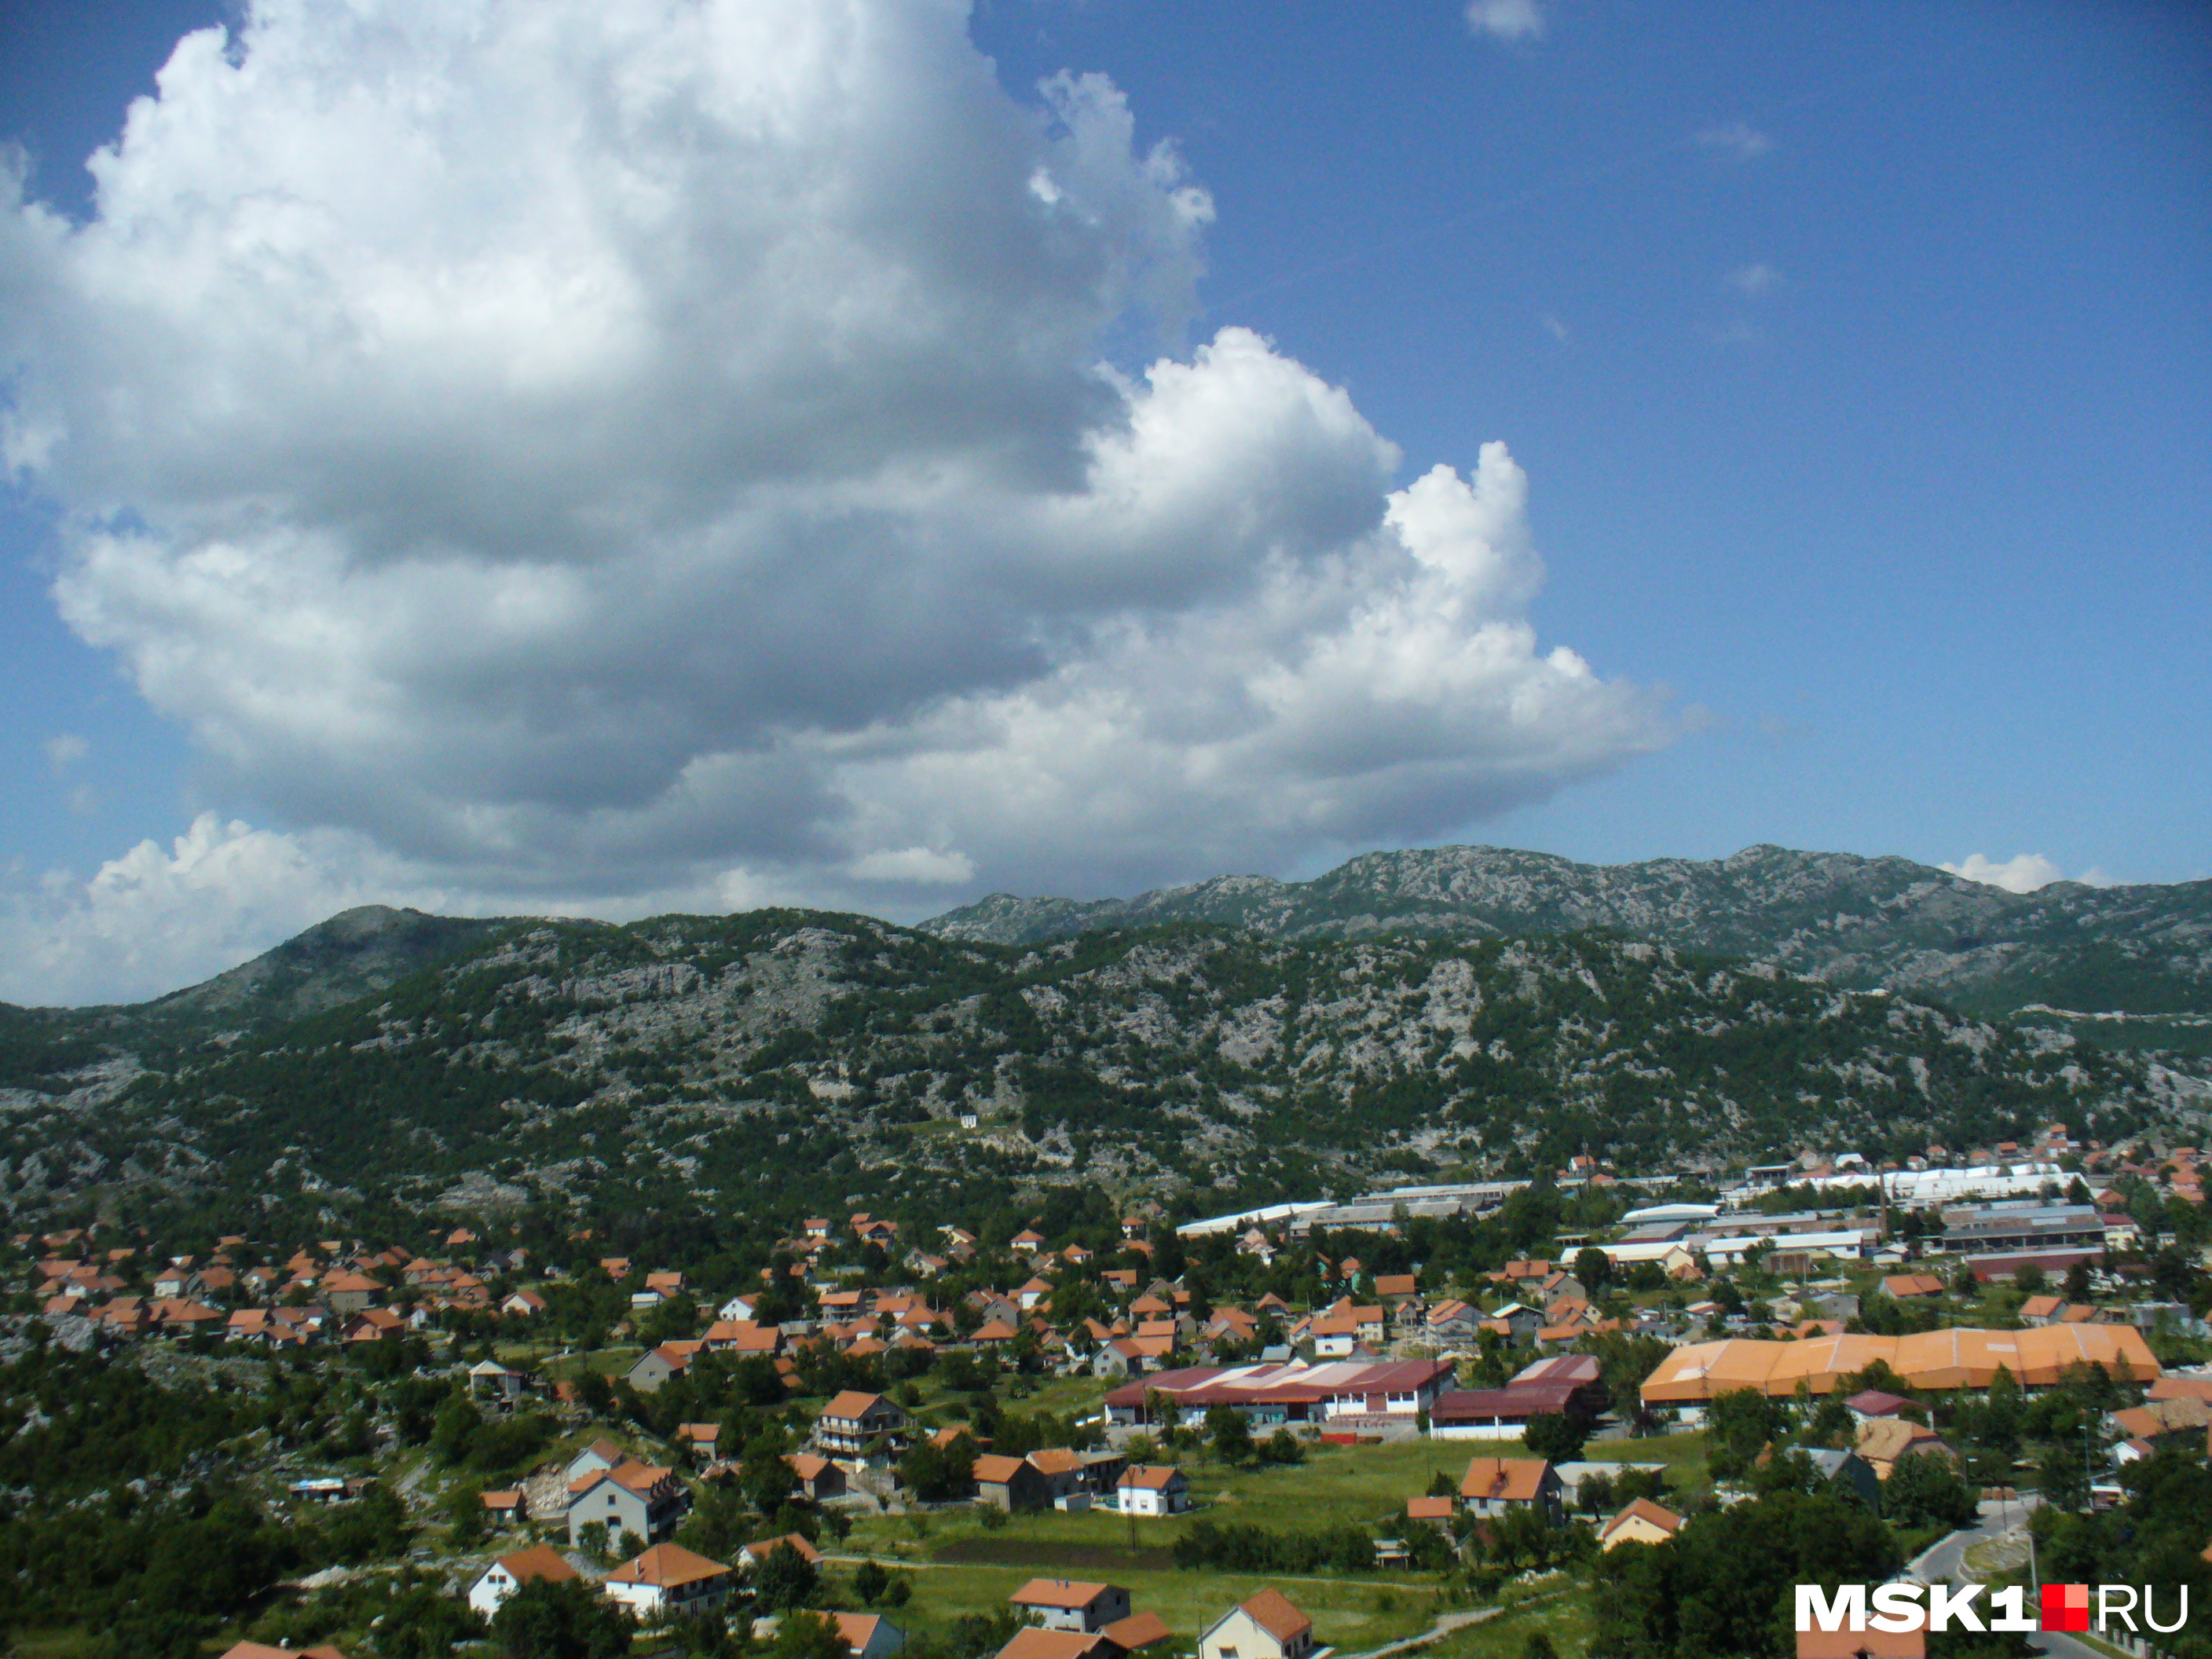 Черногория — маленькая и уютная страна в окружении гор. И кажется, понятно, почему она так называется